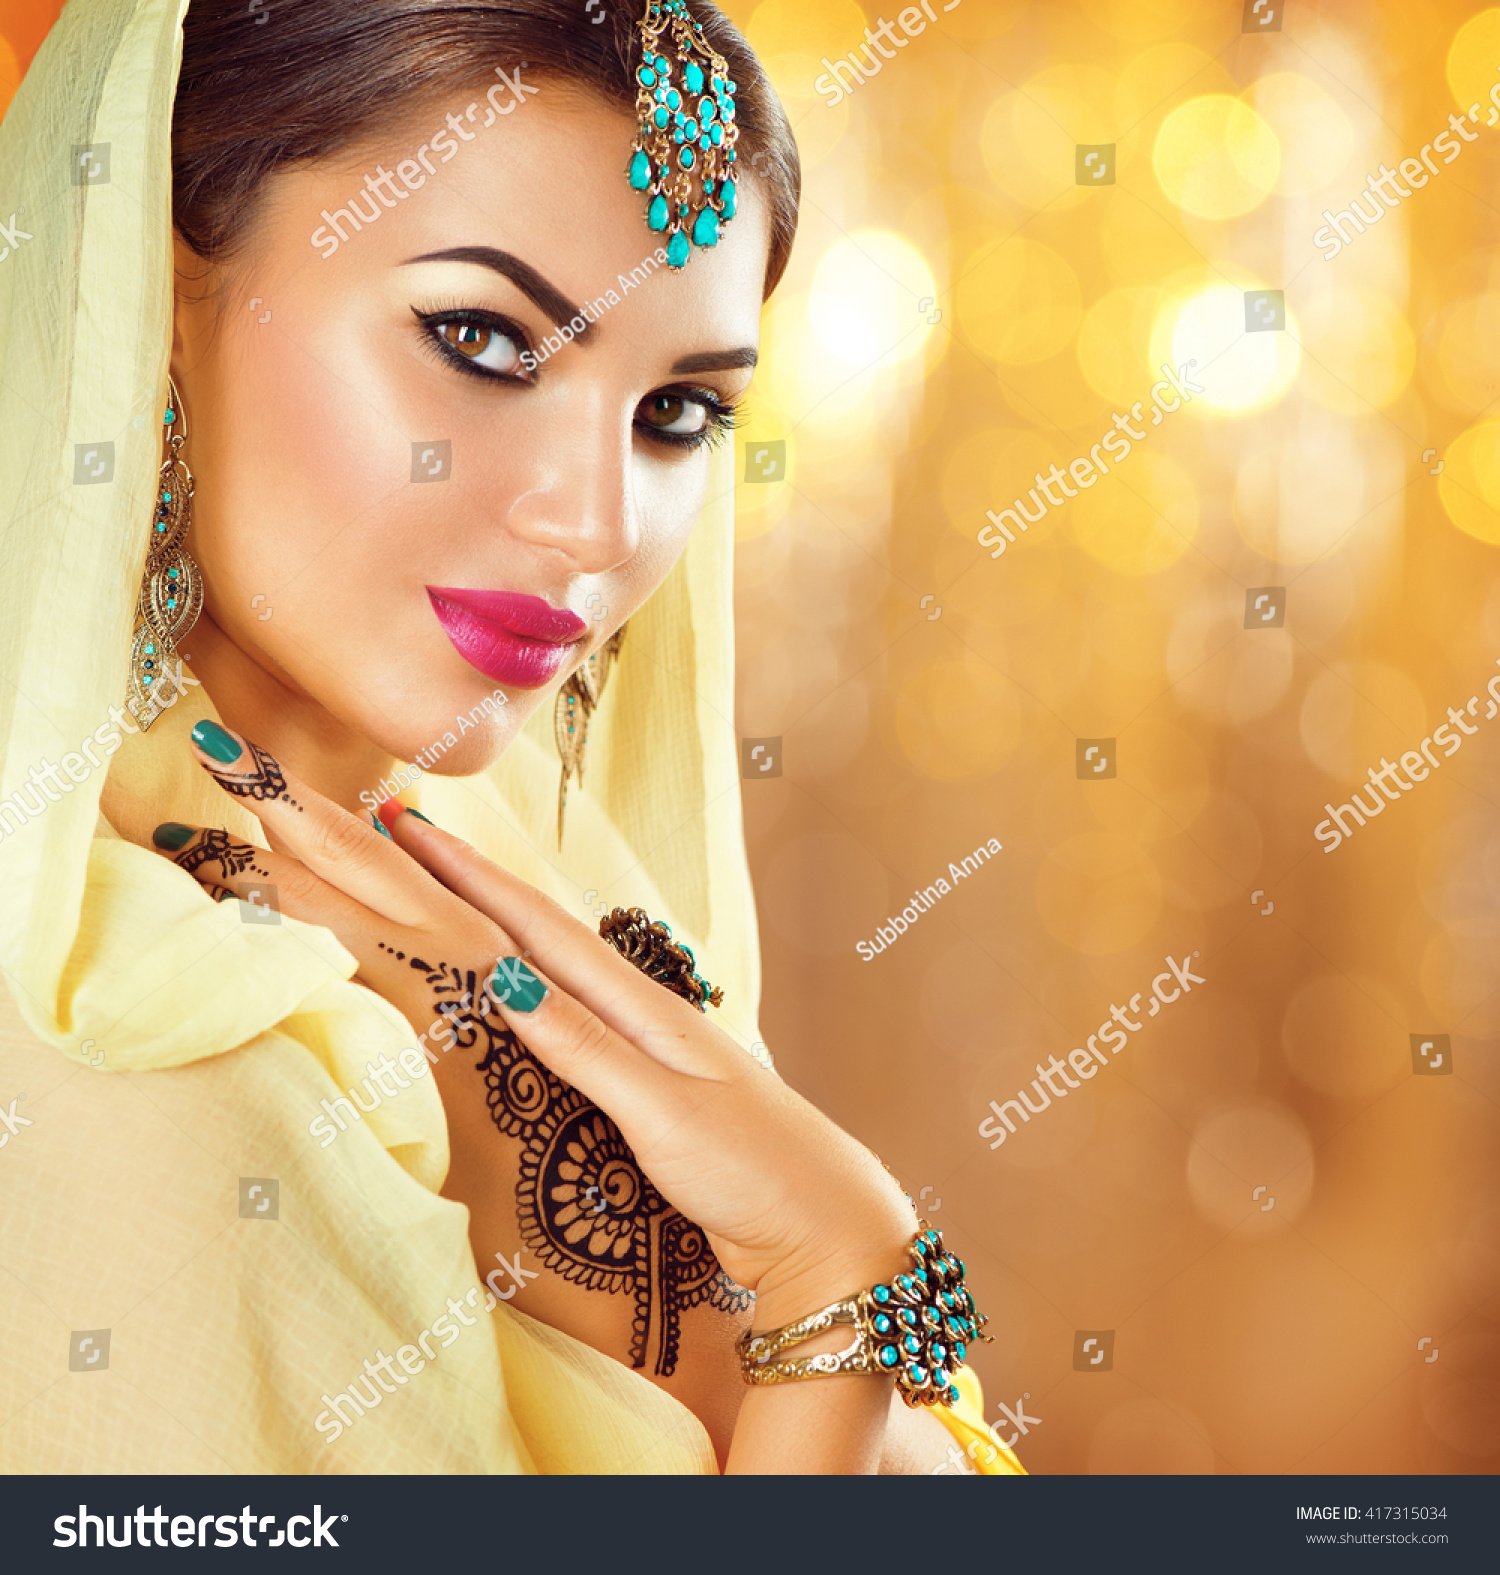 東洋のアクセサリーを持つ美しいファッション・インドの女性のポートレート イヤリング、ブレスレット、リング。黒いヘナの入れ墨と美しい宝石を